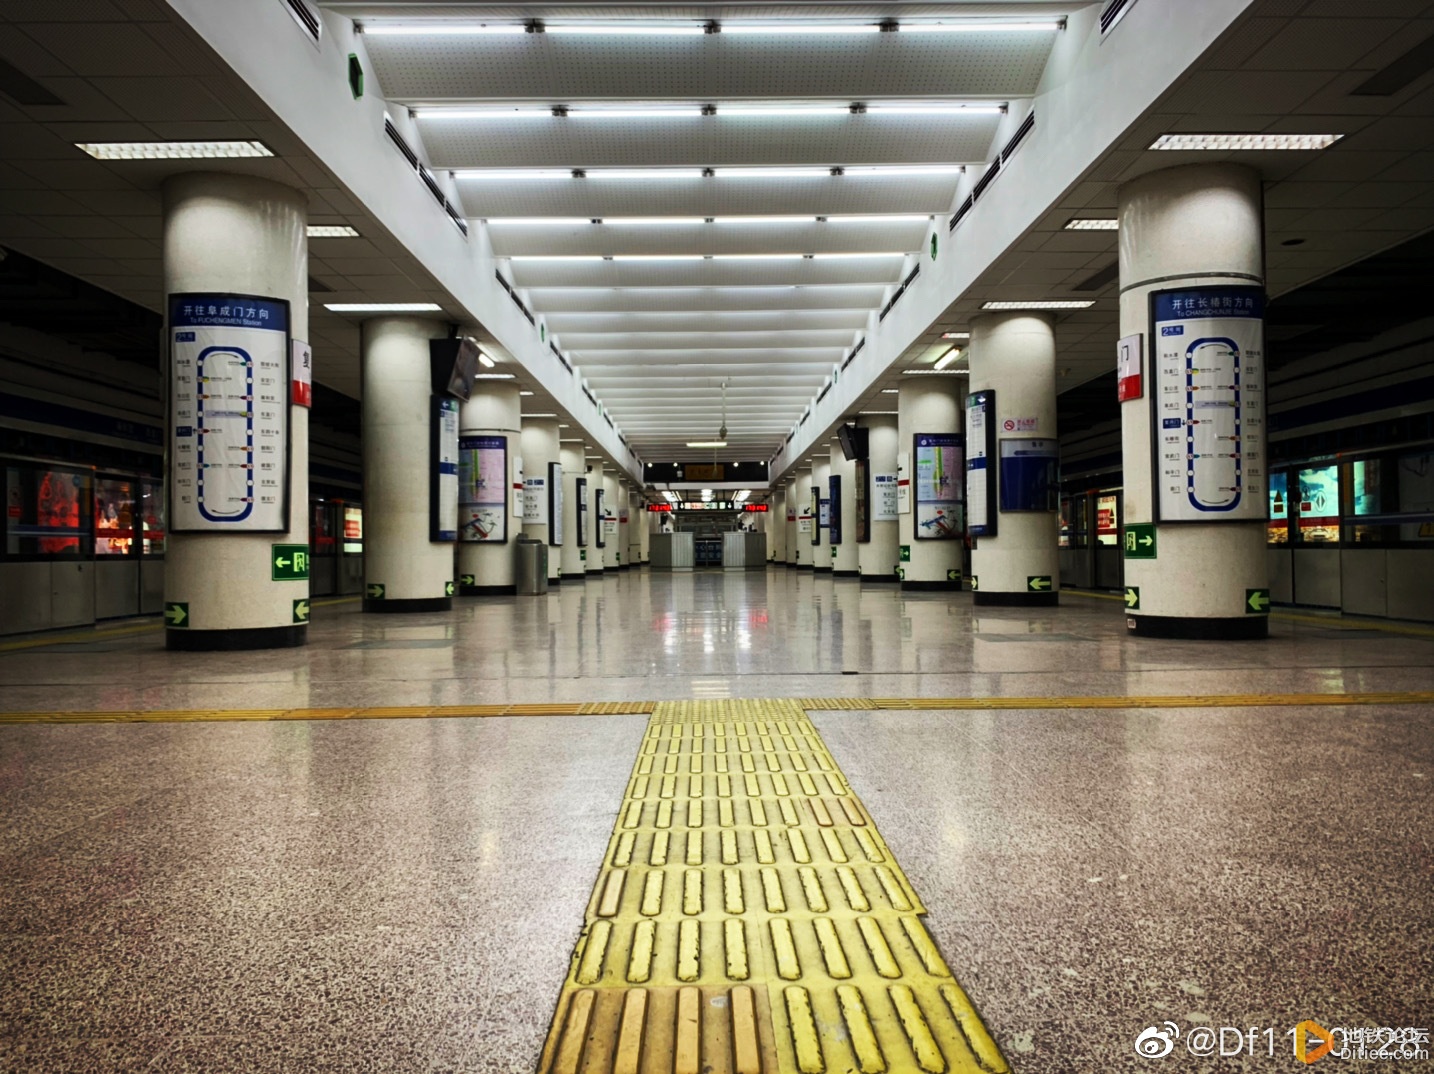 北京地铁2号线二期工程哪站最漂亮 - 北京地铁 地铁e族